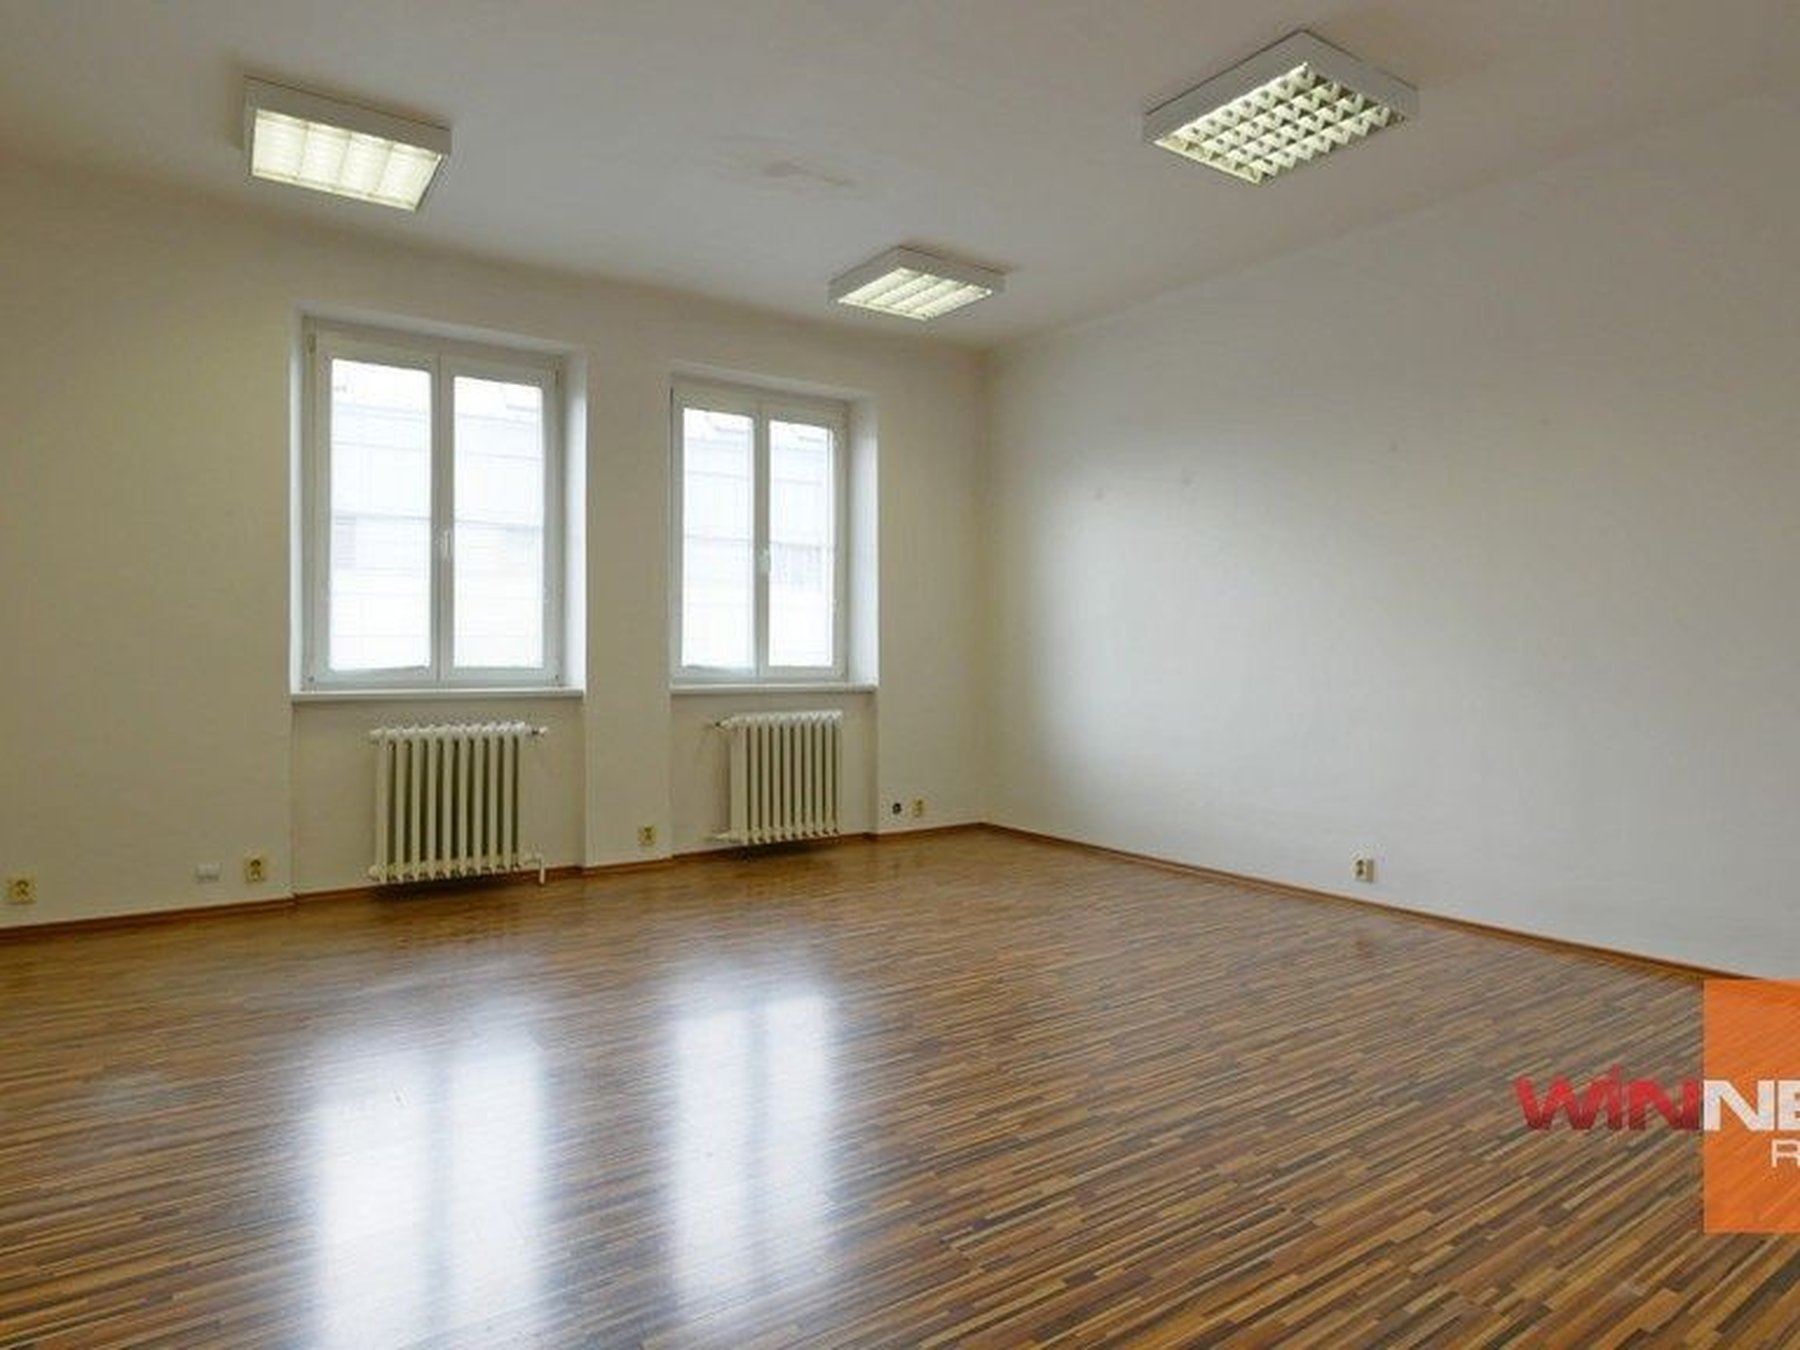 Kancelárie, administratívne priestory 25,5 m² , Kompletná rekonštrukcia